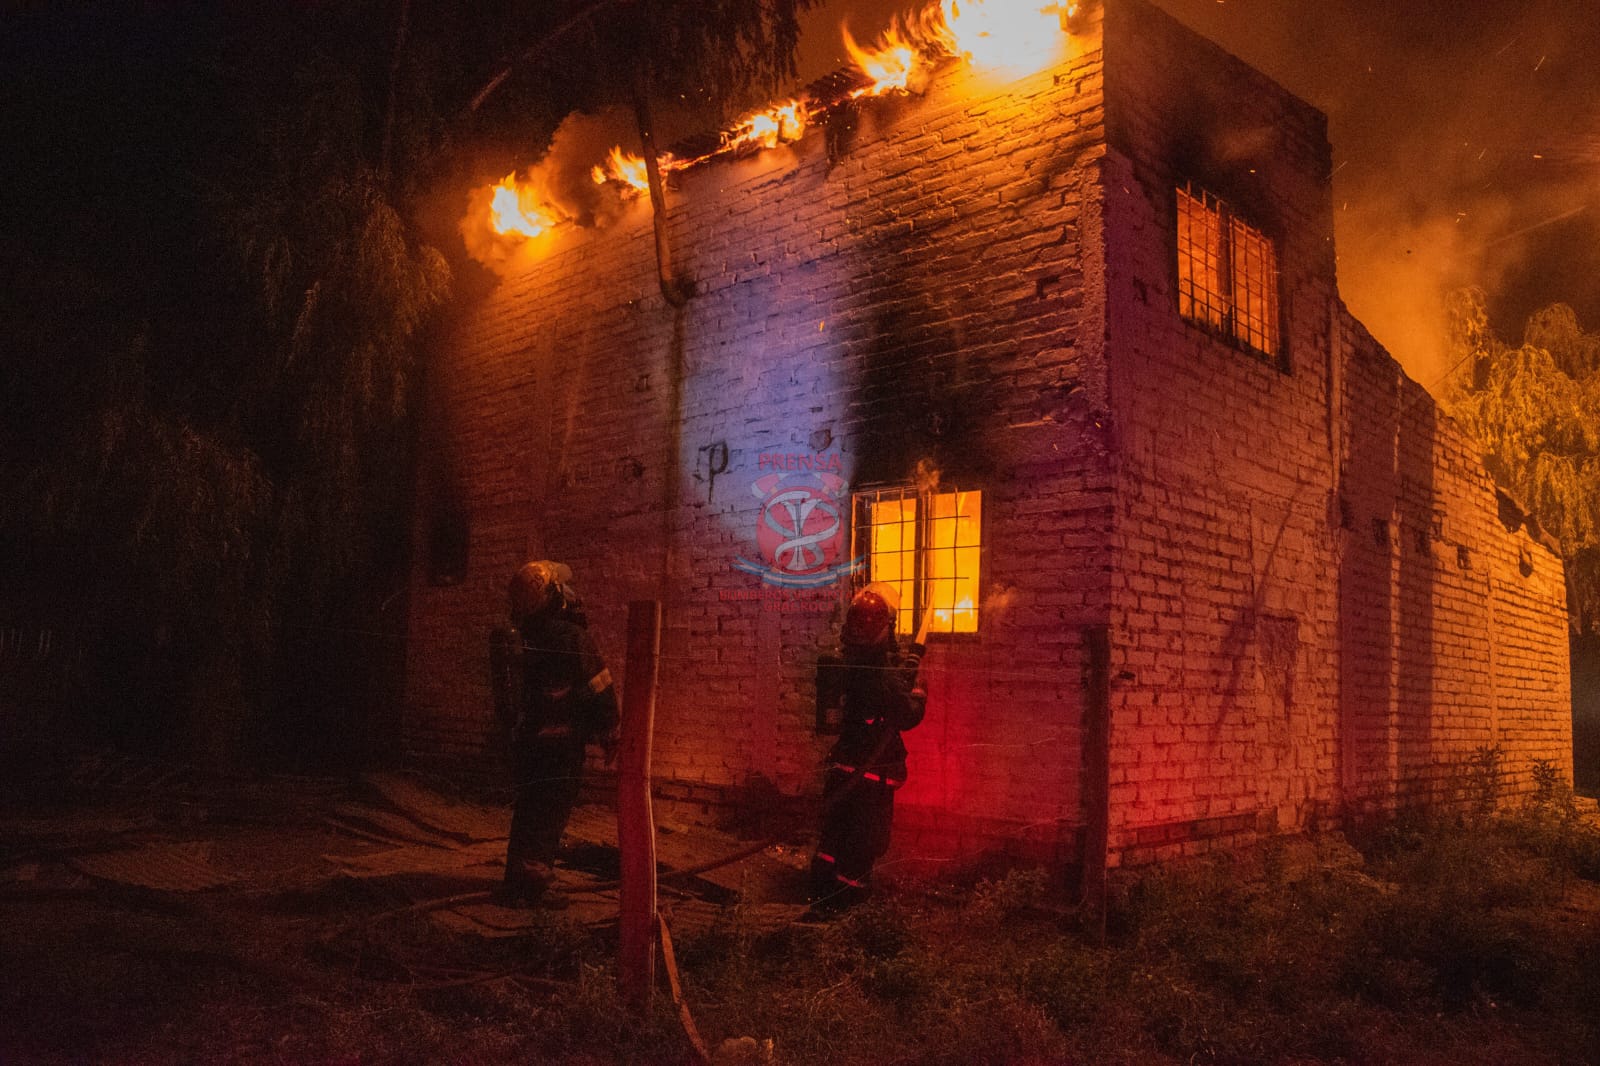 A  fines de abril, los vecinos incendiario la casa del cuidador de caballos, en la zona oeste de Roca. foto:gentileza bomberos.